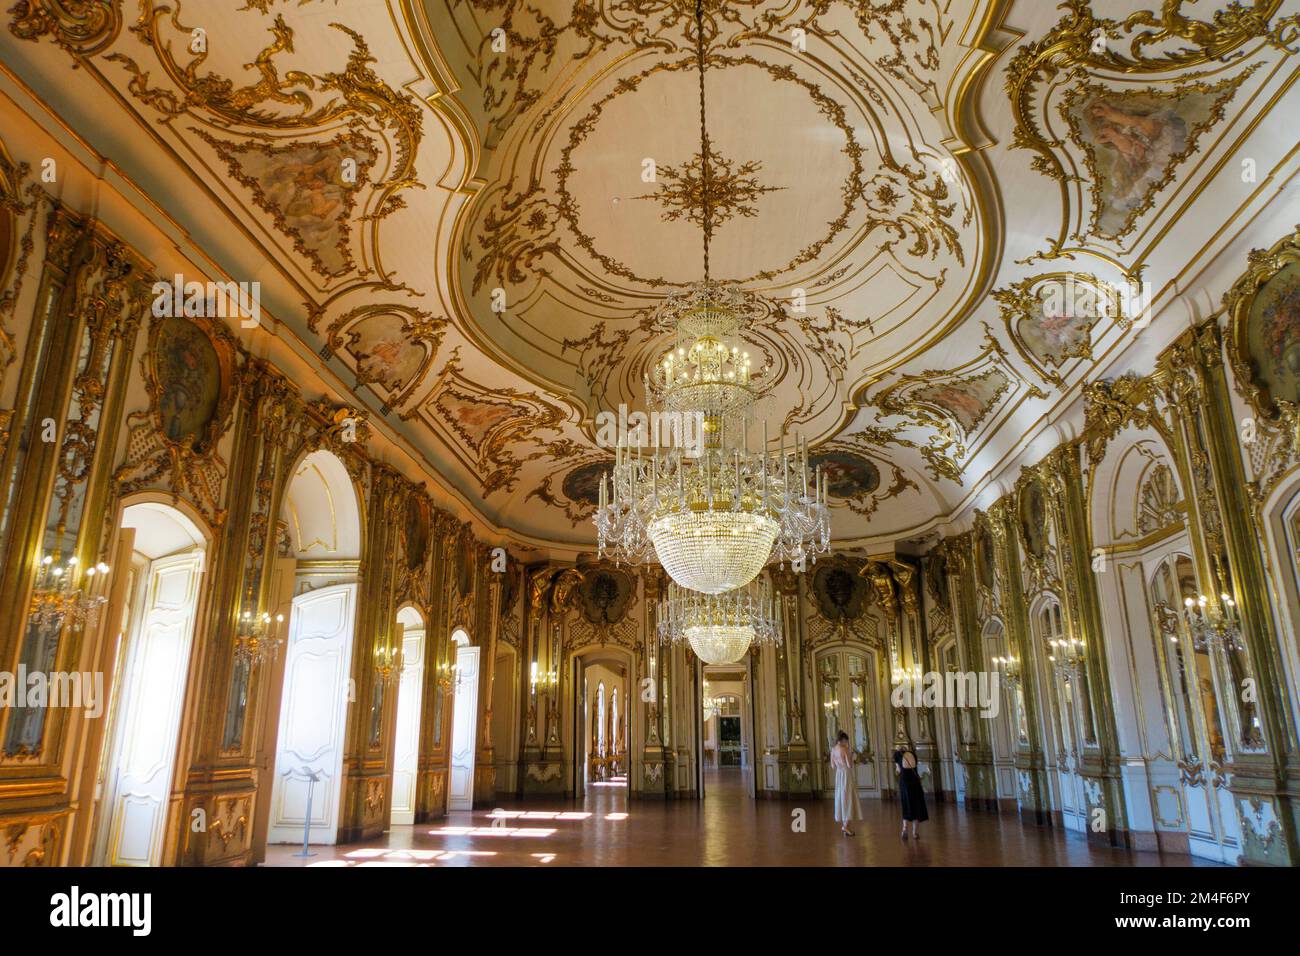 Salle de bal au Palais de Queluz - Palácio Nacional de Queluz - Portugal, Europe Banque D'Images